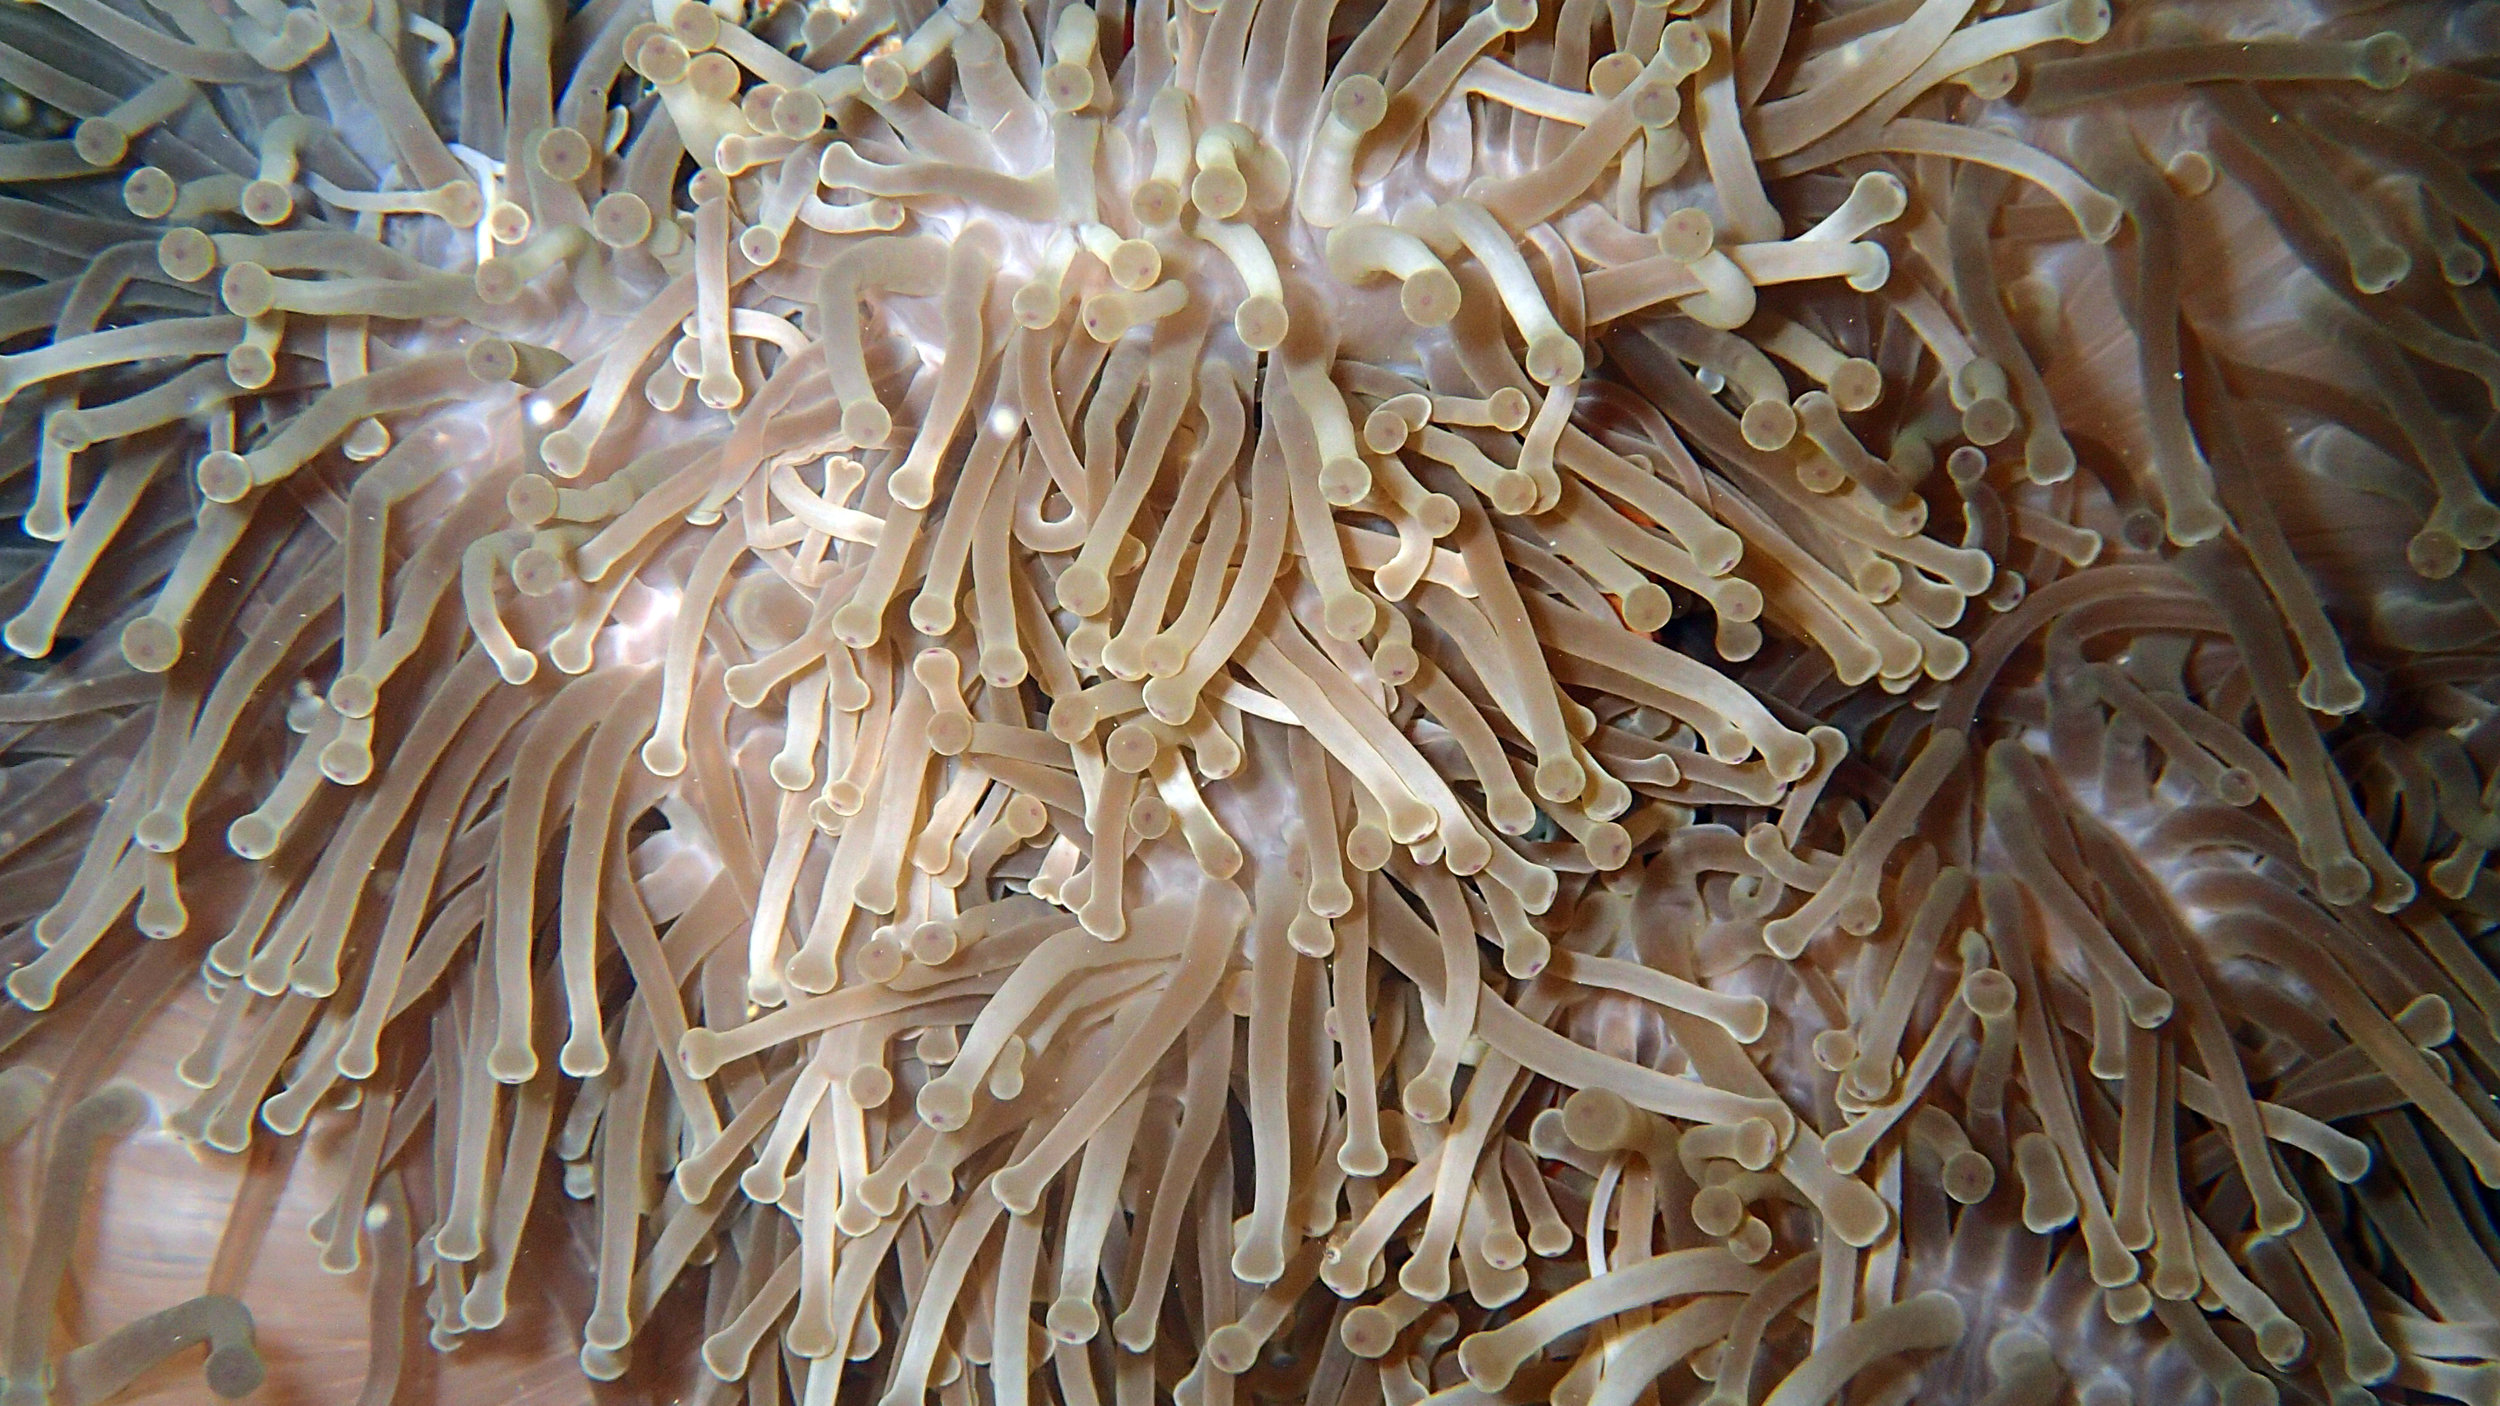 anemone tentacles.jpg